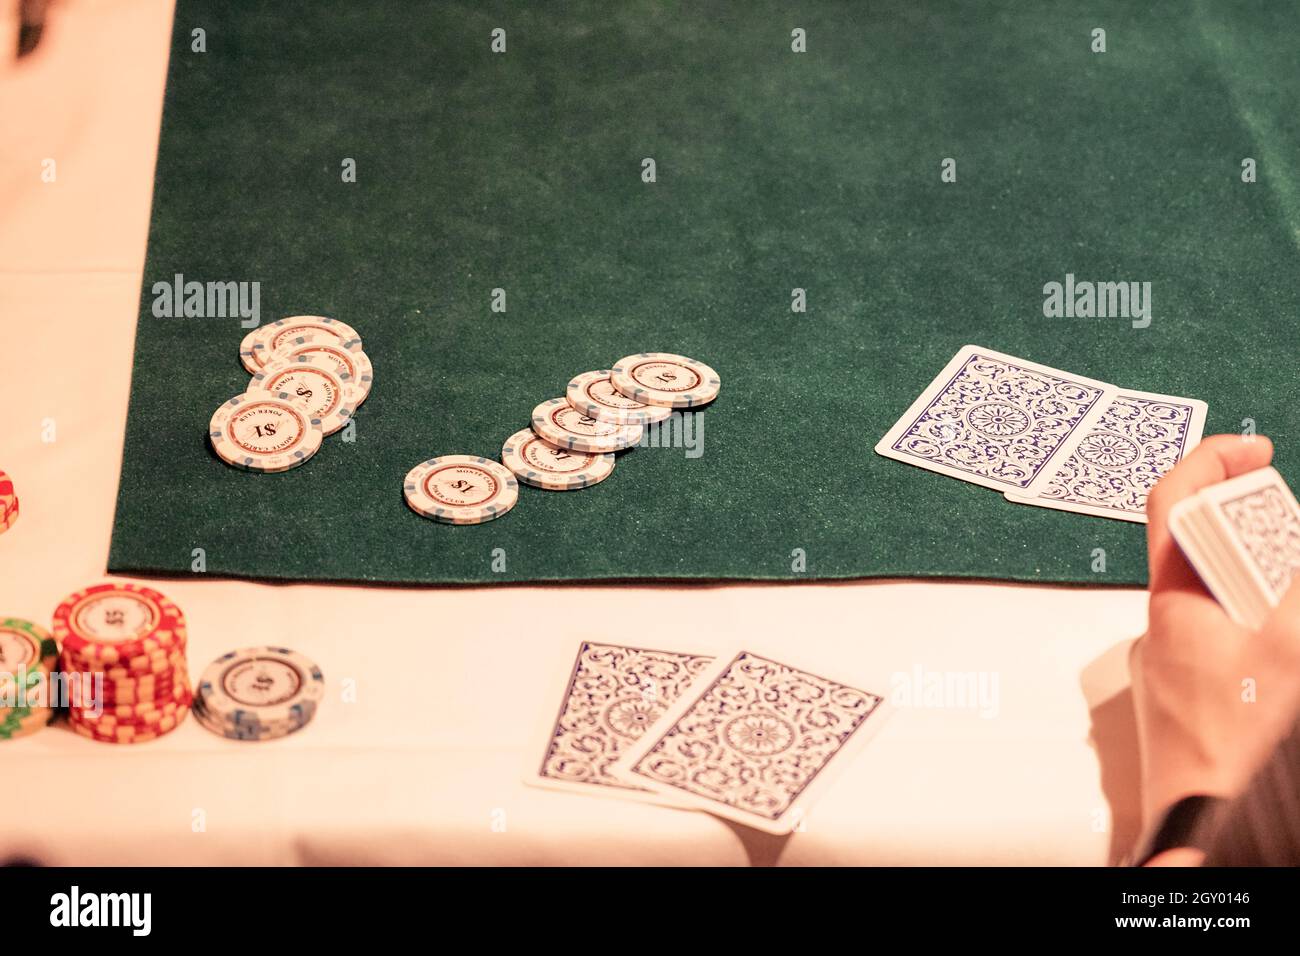 Imagen de Texas Holdem (poker). Ubicación del rodaje: Área metropolitana de Tokio Foto de stock